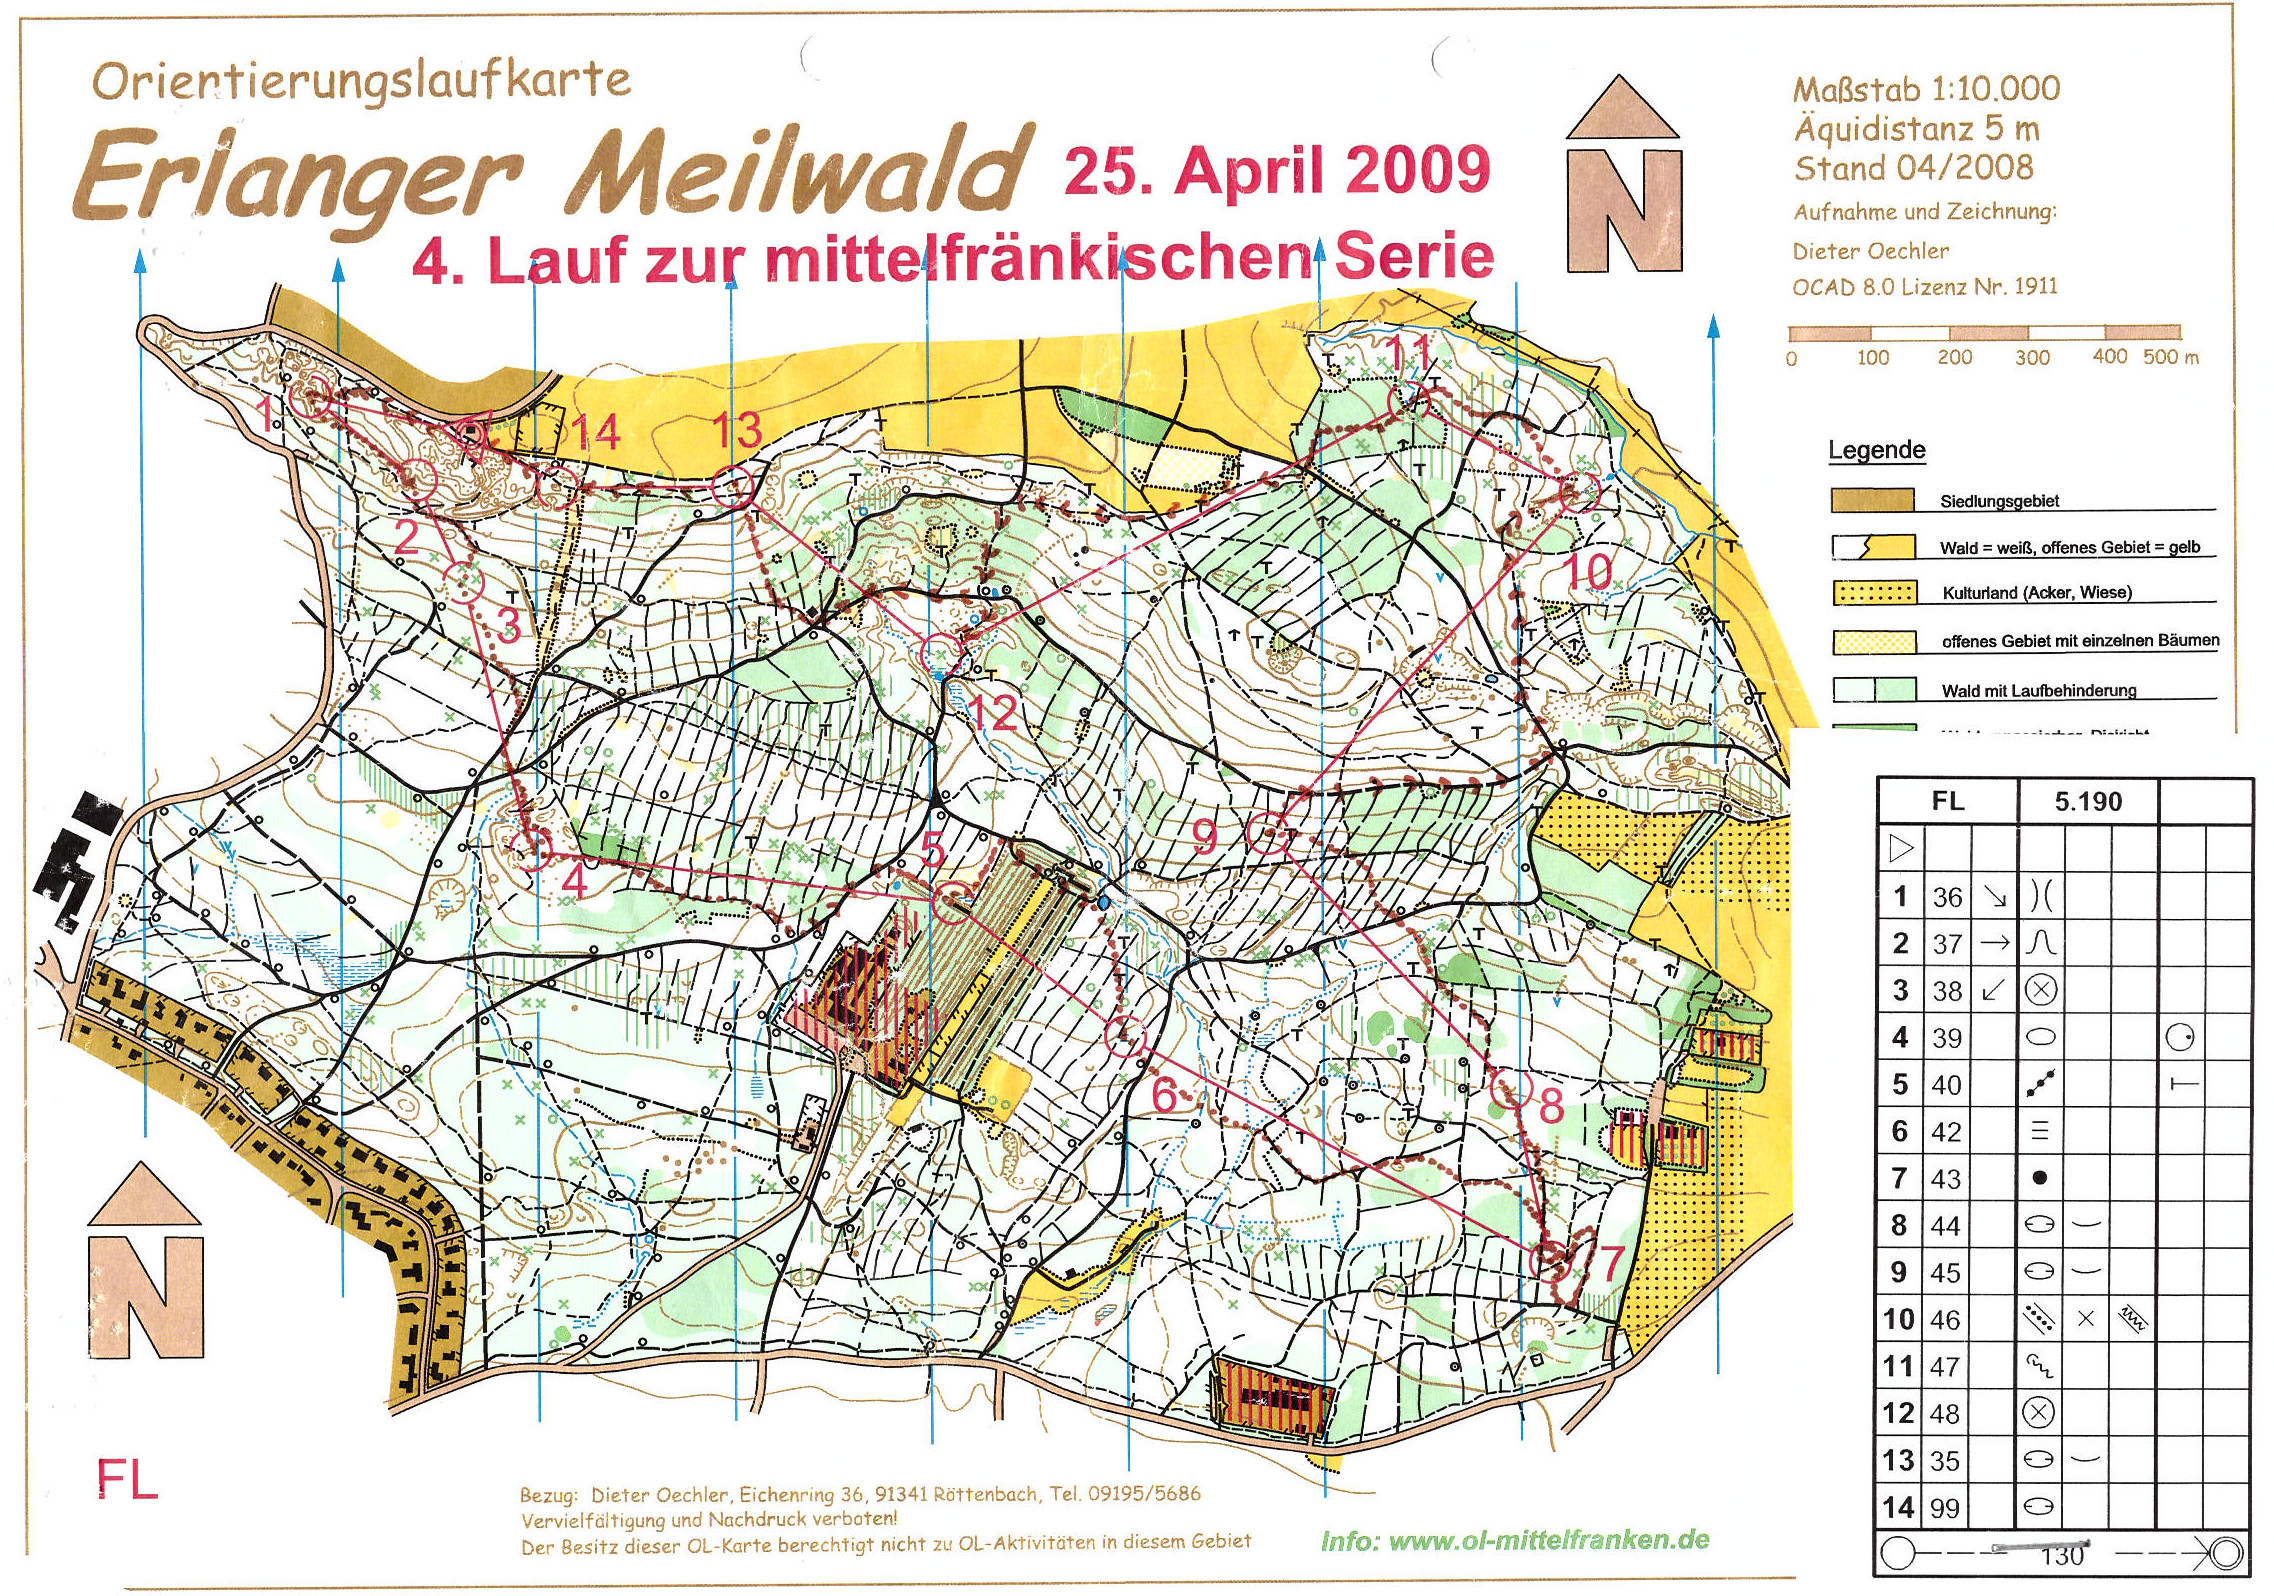 Mittelfranken-Serie 2009 Lauf 3 (25.04.2009)